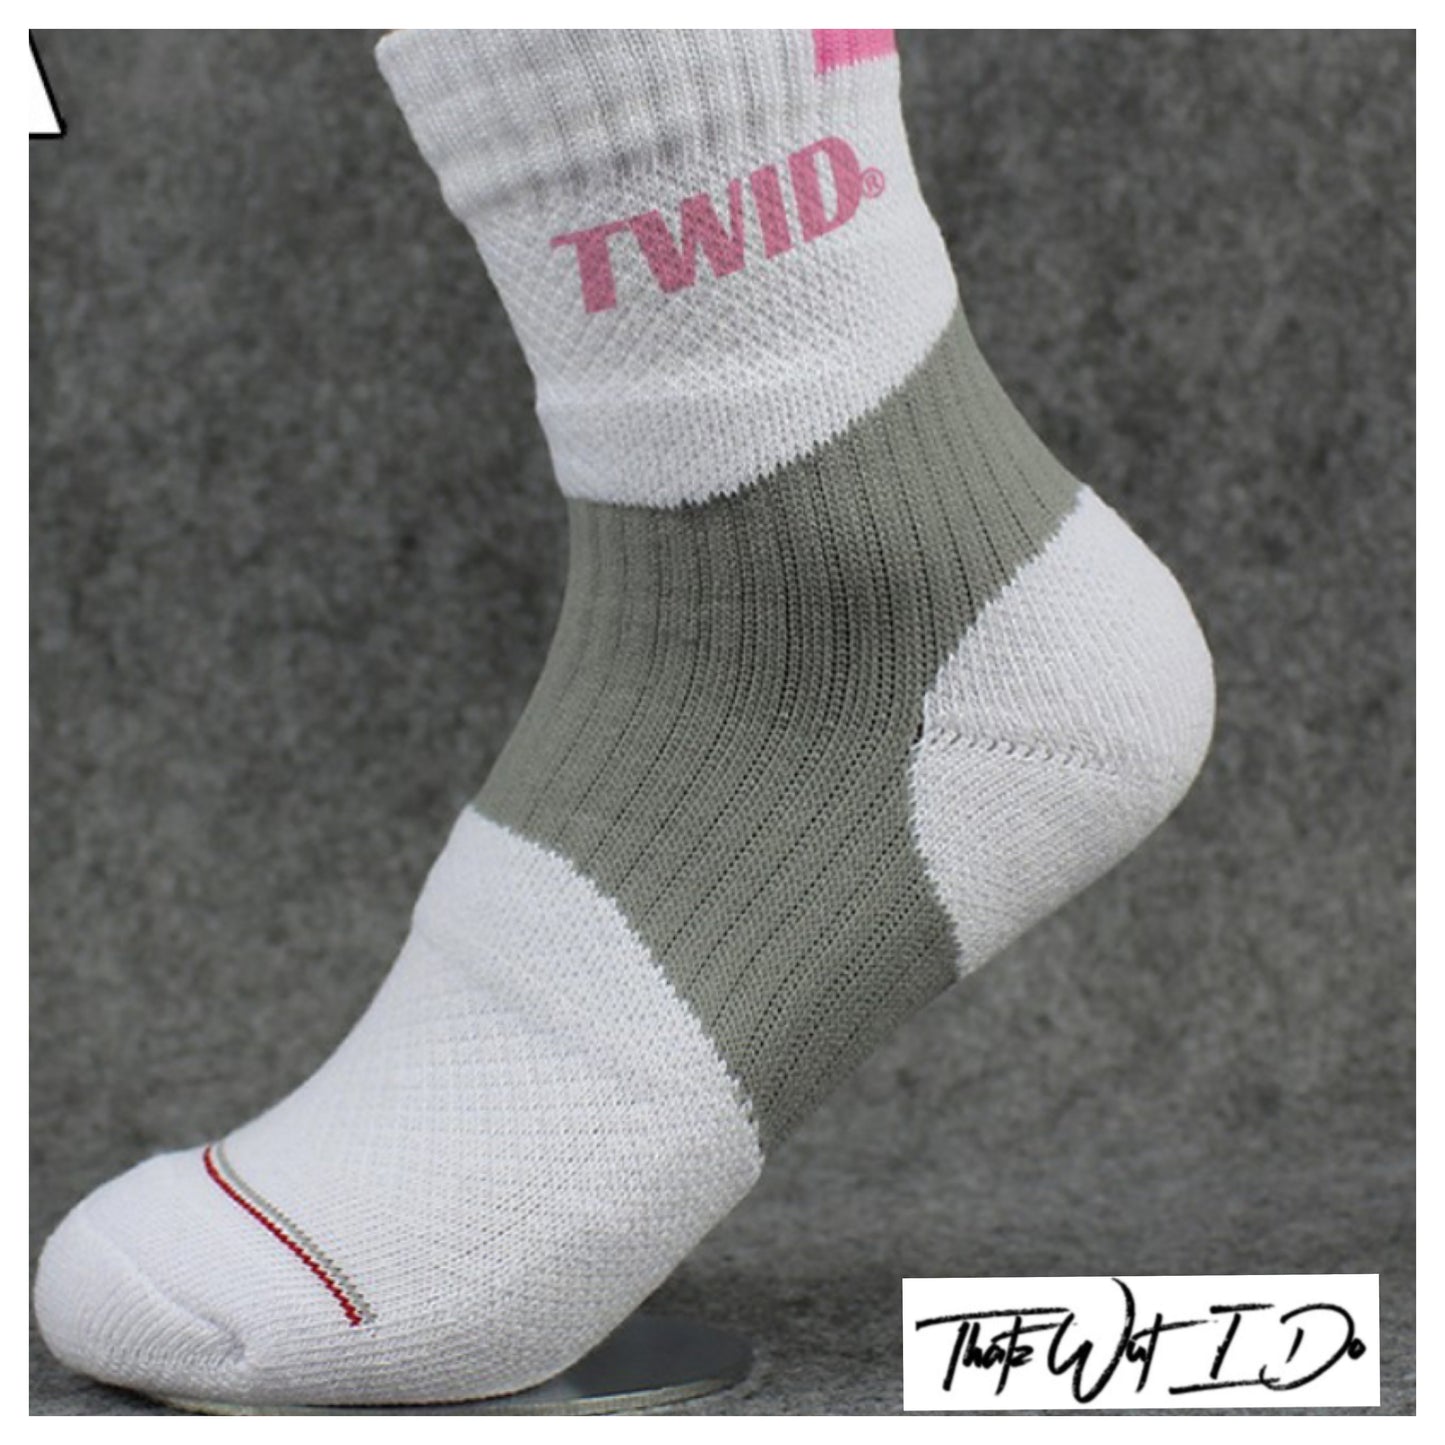 Unisex Twid socks